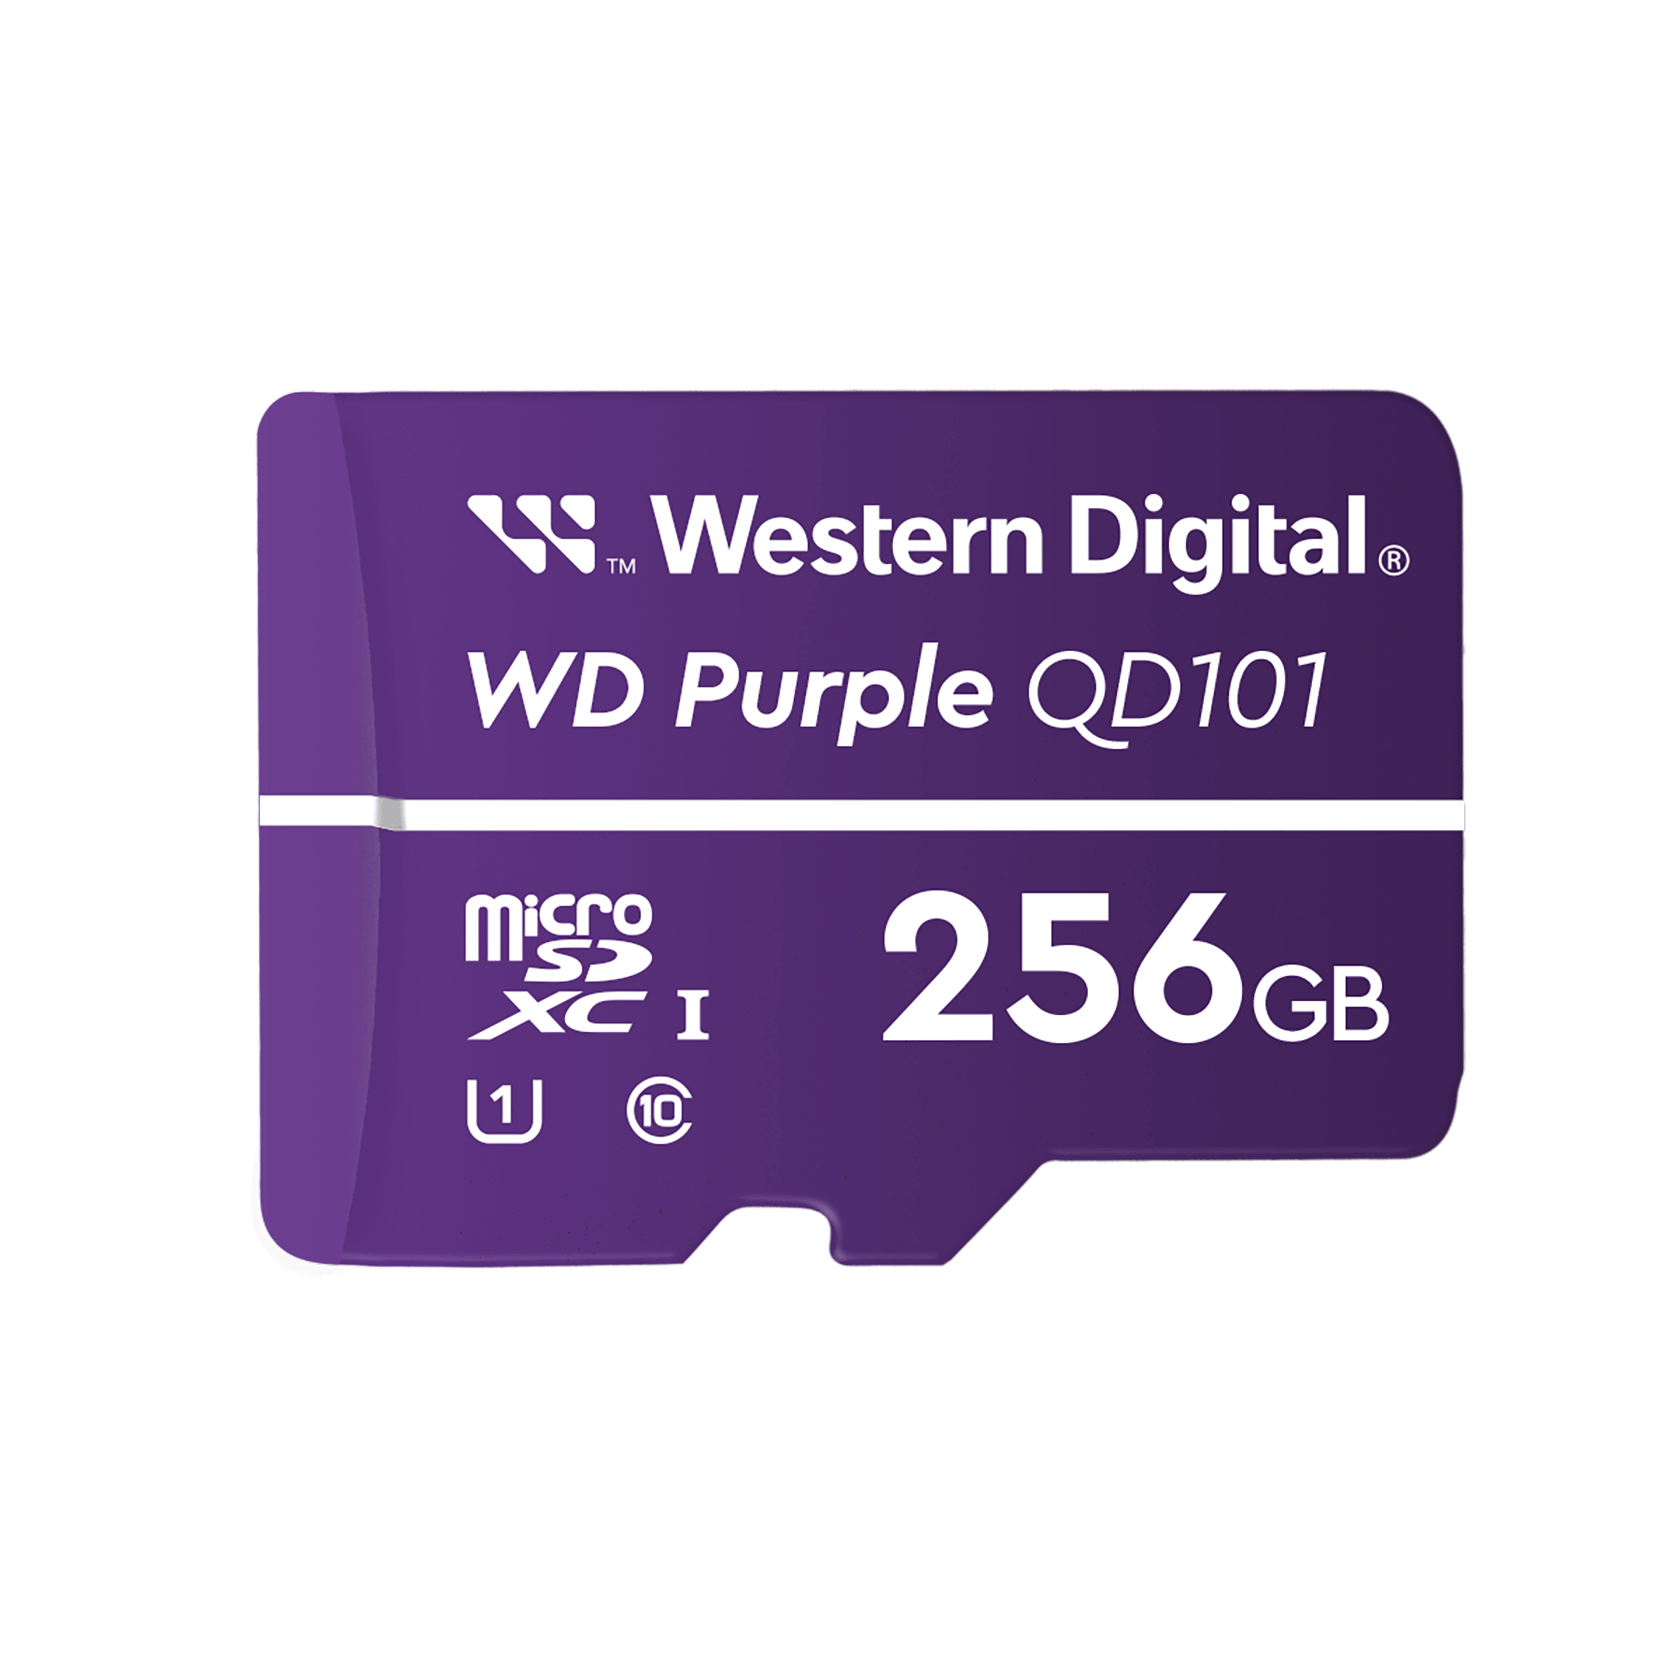 Western Digital WD SC QD101 - 256GB MicroSD Card, Purple - WDD256G1P0C